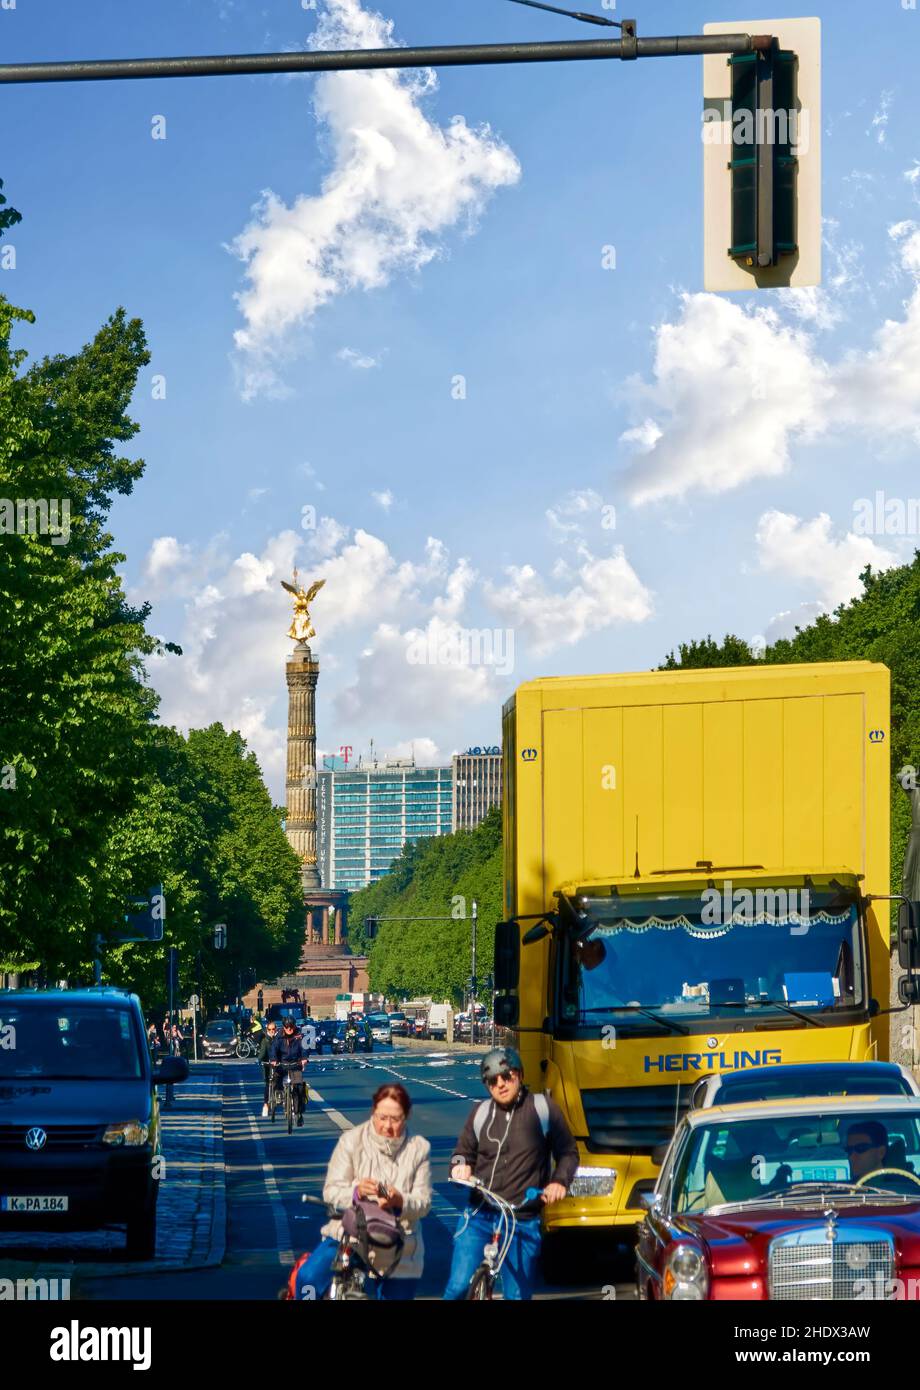 Berlino, Germania, 6 maggio 2020: Ciclisti e automobilisti in attesa al semaforo su Straße des 17. Juni con la colonna della Vittoria sullo sfondo Foto Stock